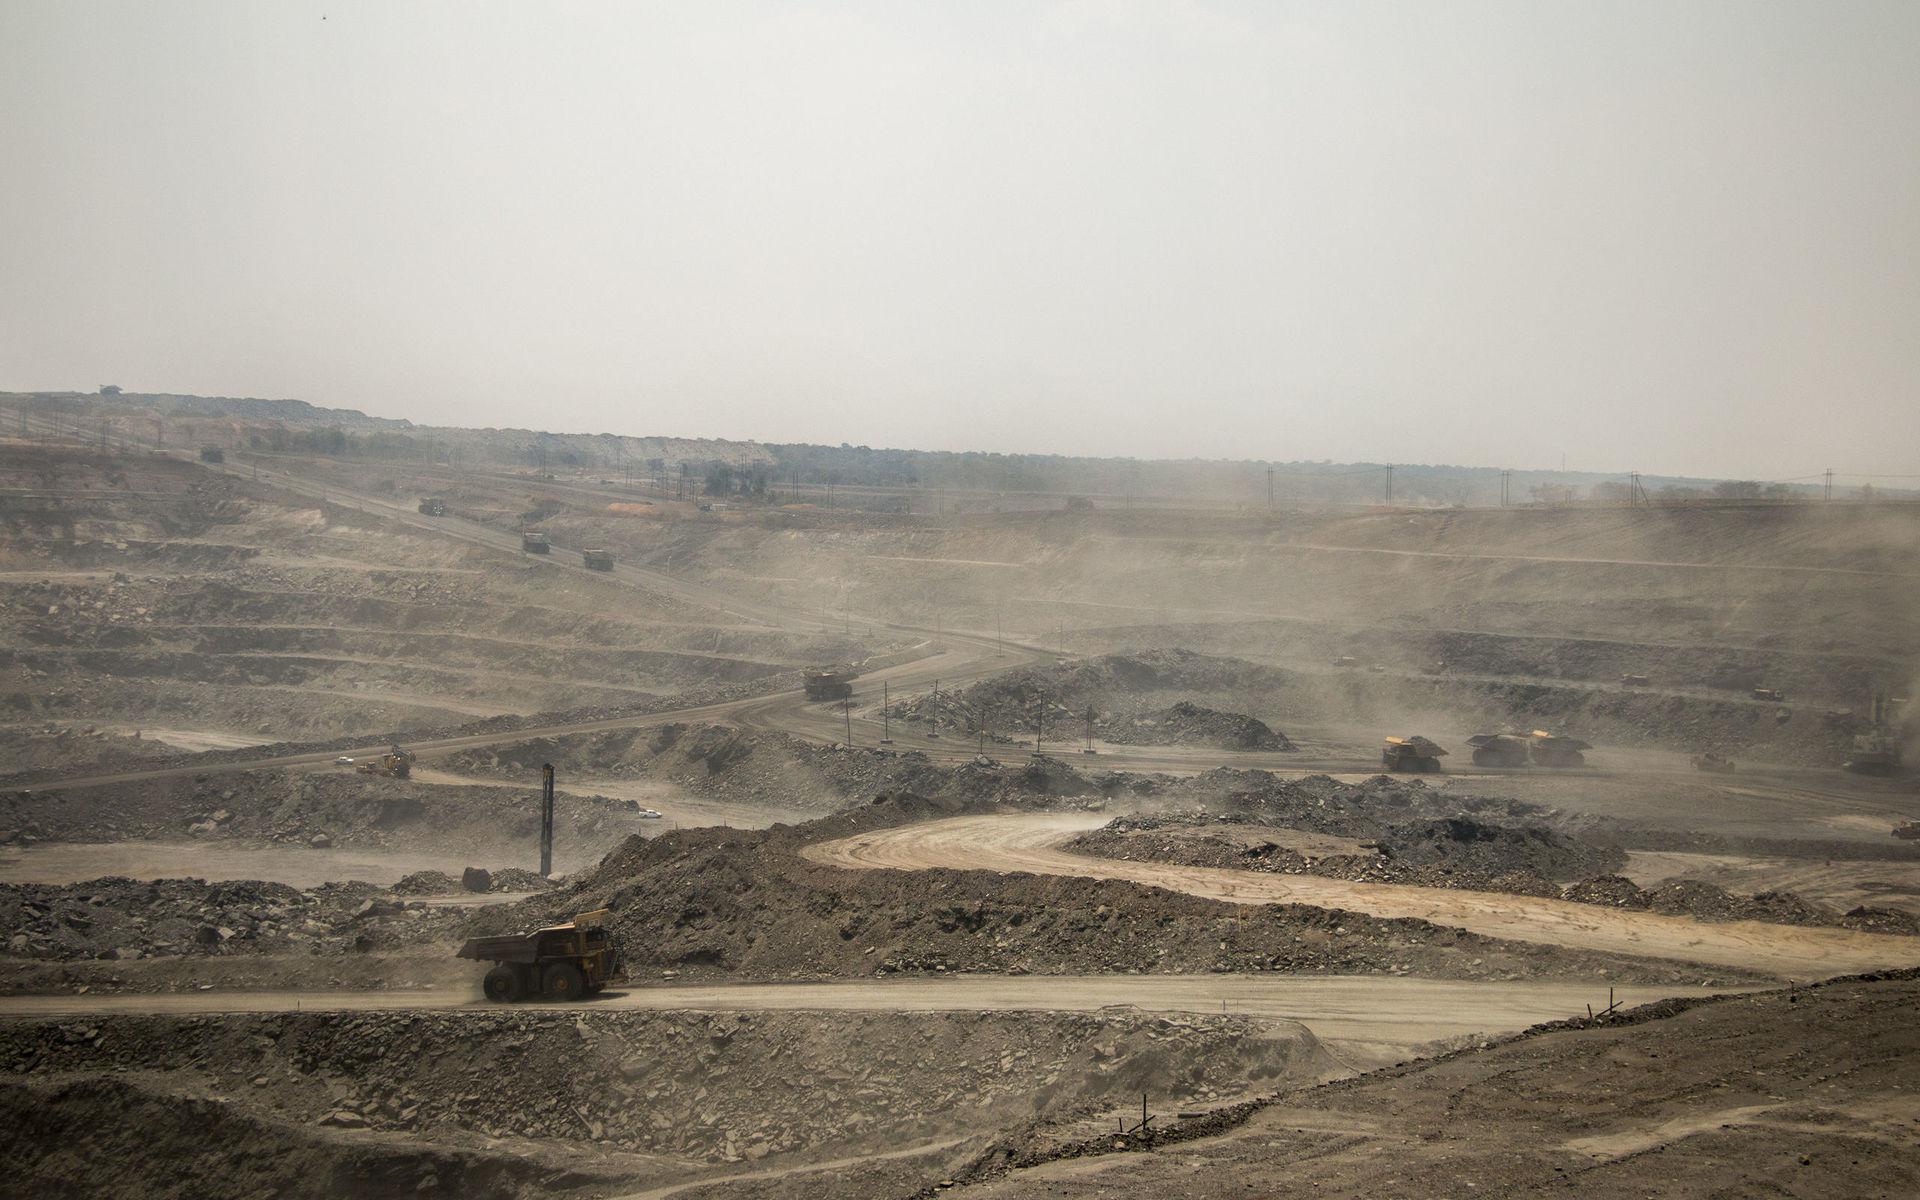 Aktiviteten i gruvan i Kalumbila stannar aldrig upp. Årets produktion beräknas landa på 220 000 ton. Tillsammans med produktionen i Kansanshi gör det First Quantum till Zambias största kopparproducent.